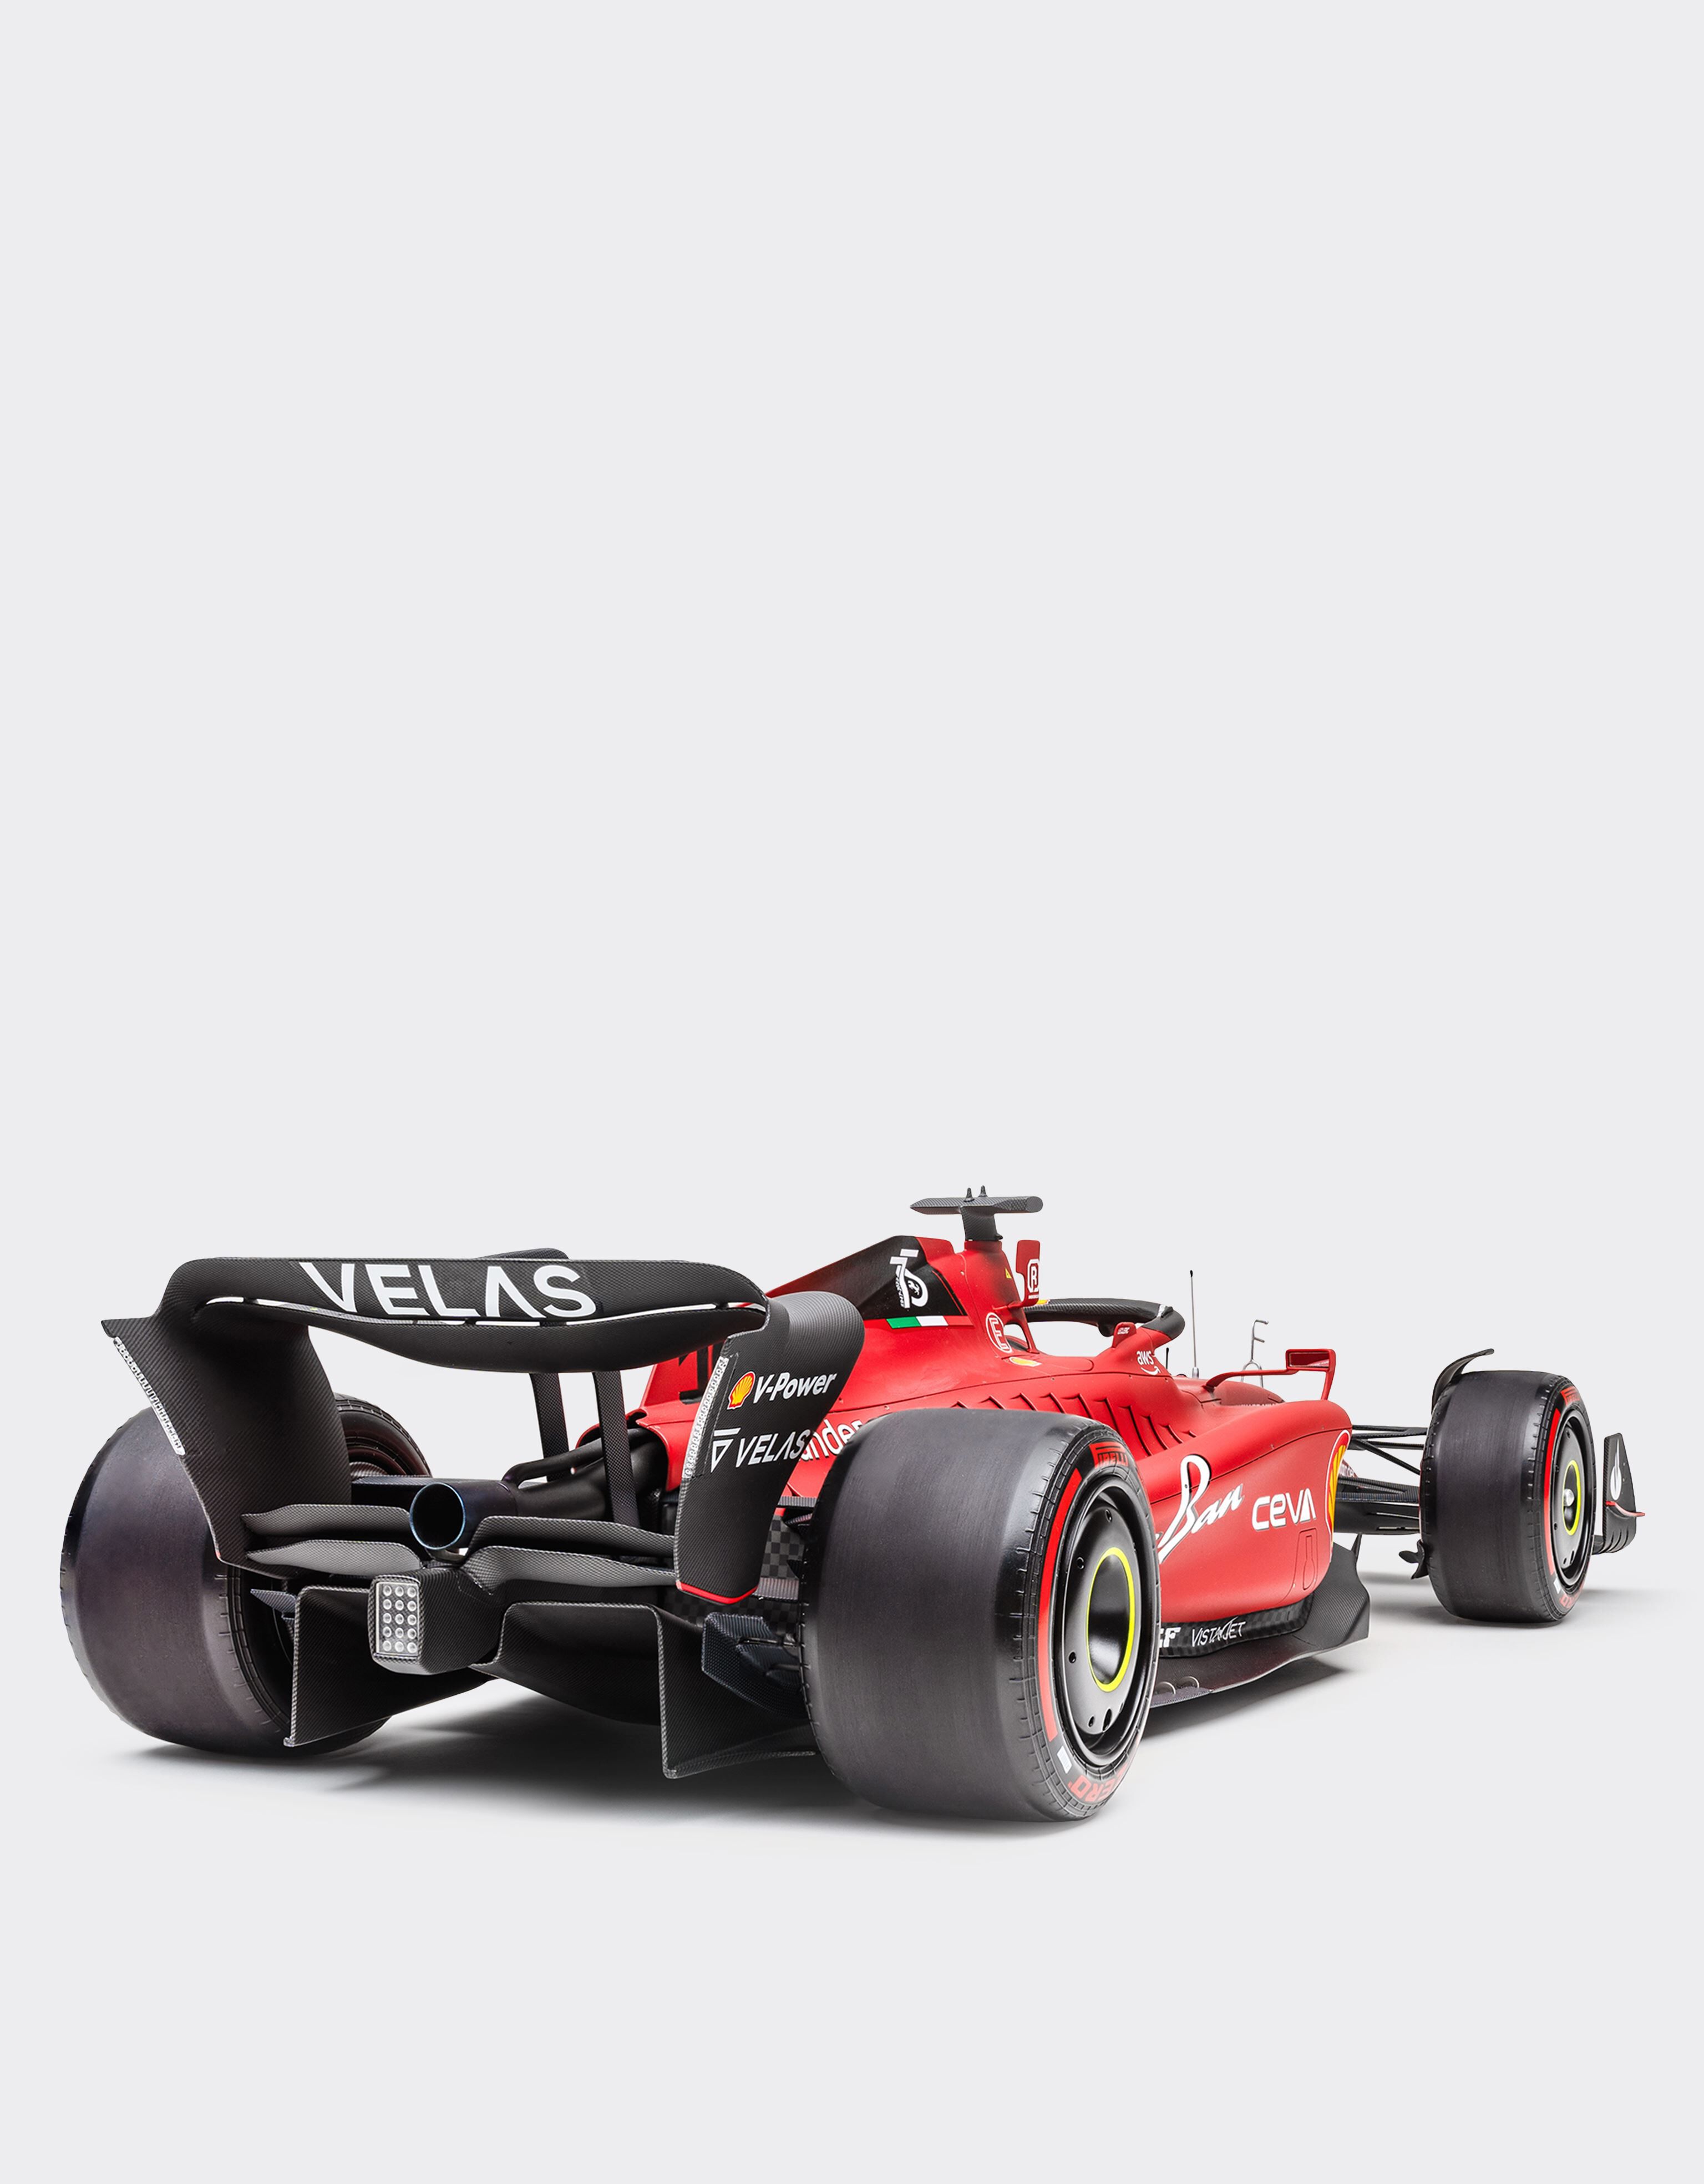 Ferrari Ferrari F1-75 シャルル・ルクレール モデルカー 1:8スケール レッド F0665f